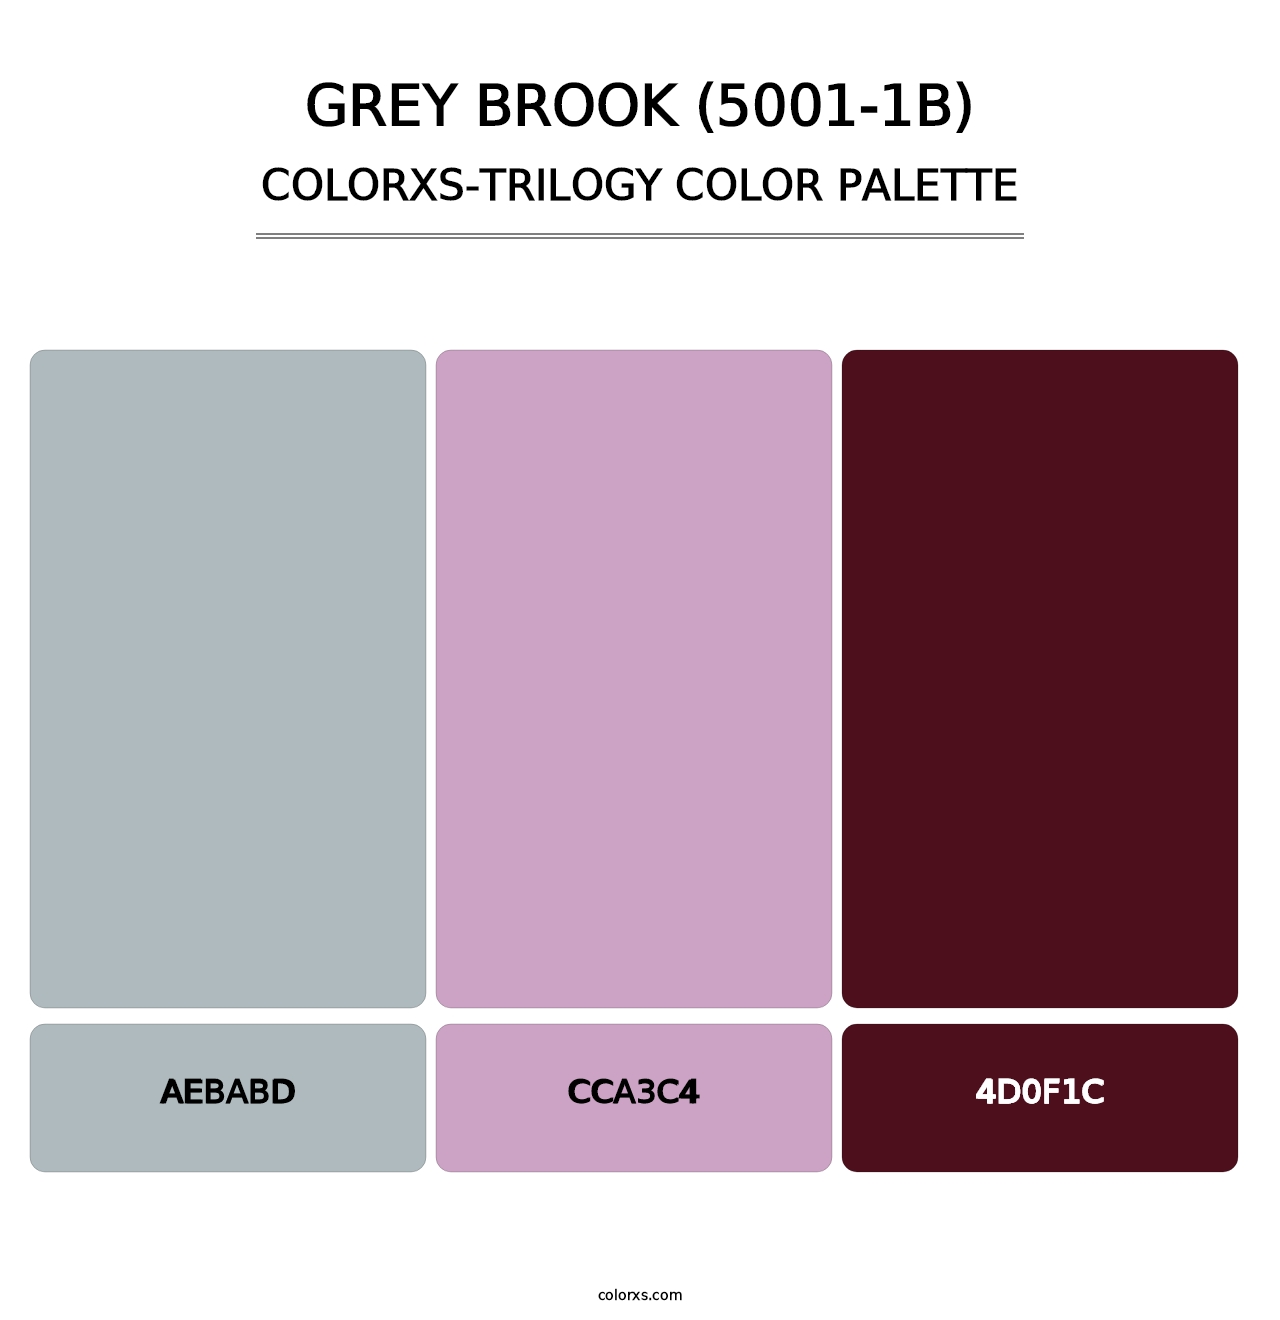 Grey Brook (5001-1B) - Colorxs Trilogy Palette